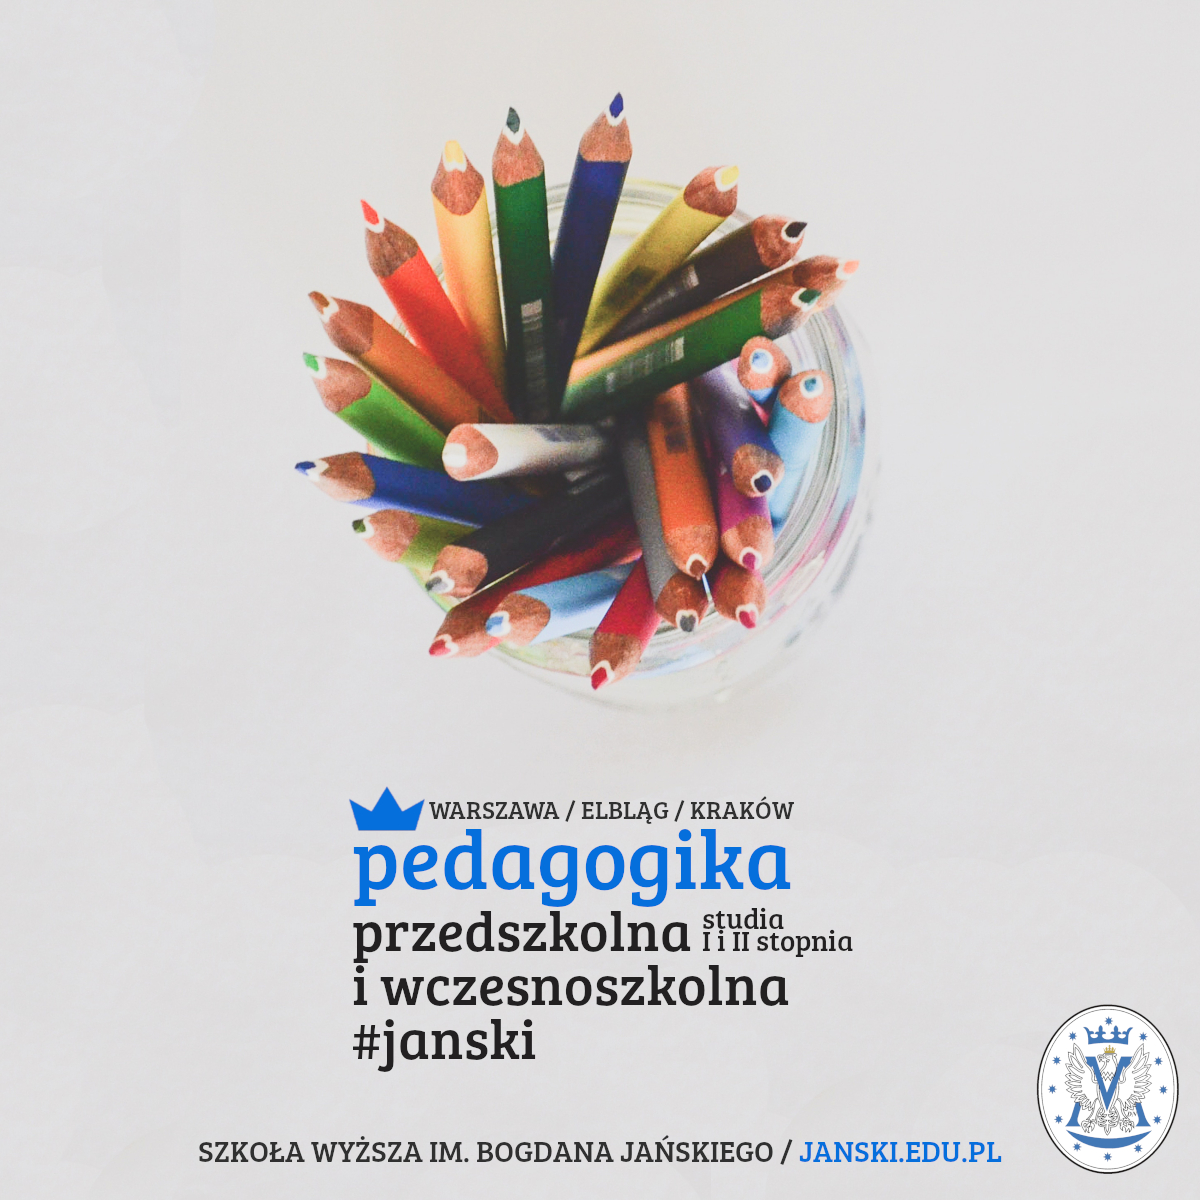 janski_pedagogika_przedszk_kwadrat